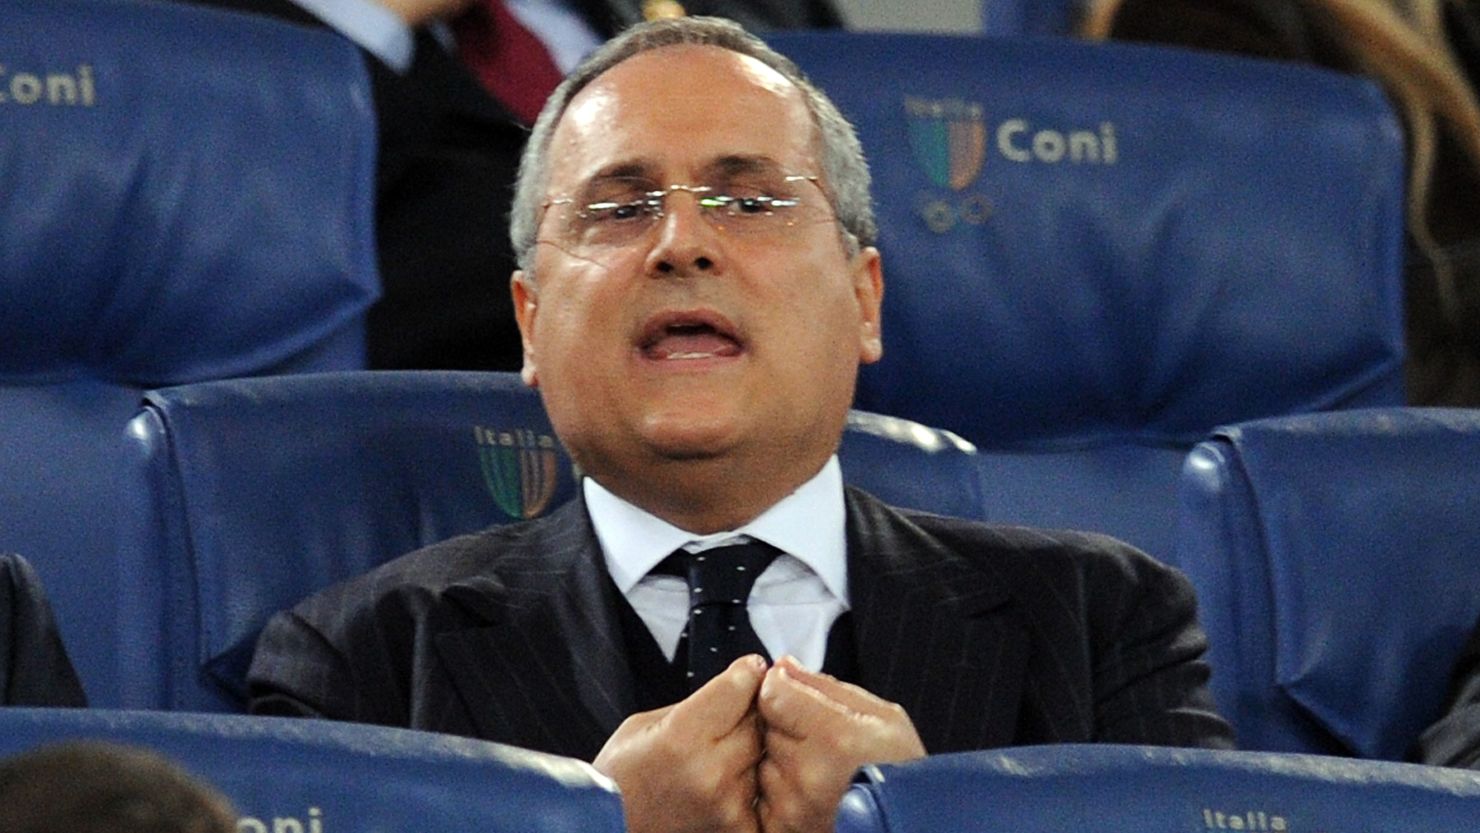 Italian entreprenuer Claudio Lotito has been president of Lazio since 2004.